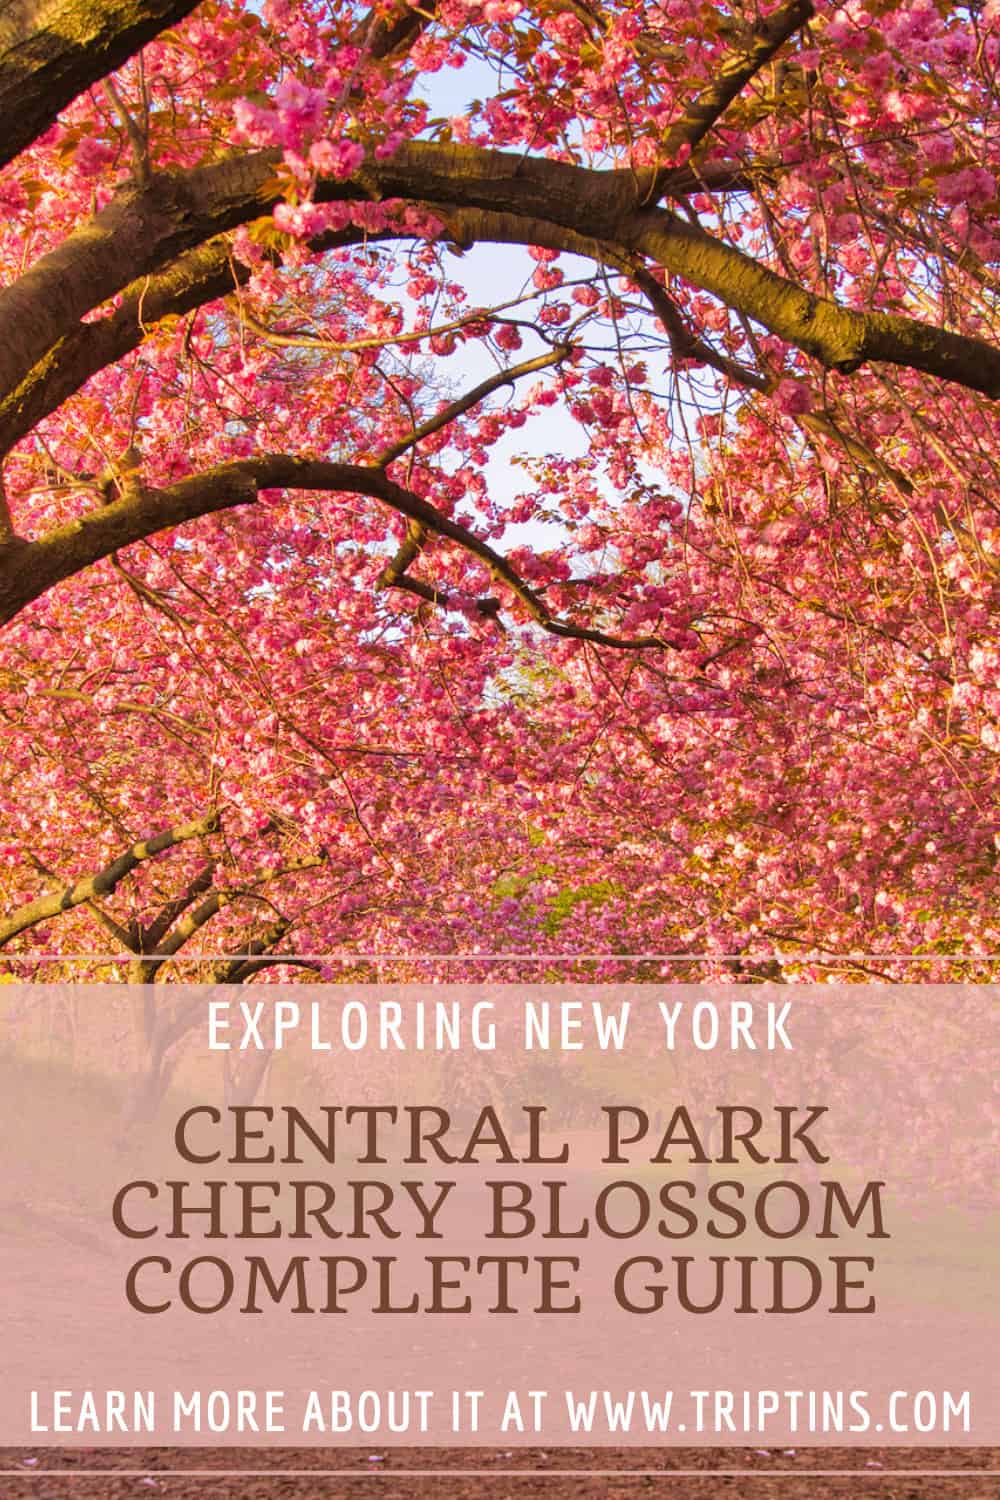 Cherry Blossom Central Park Guide